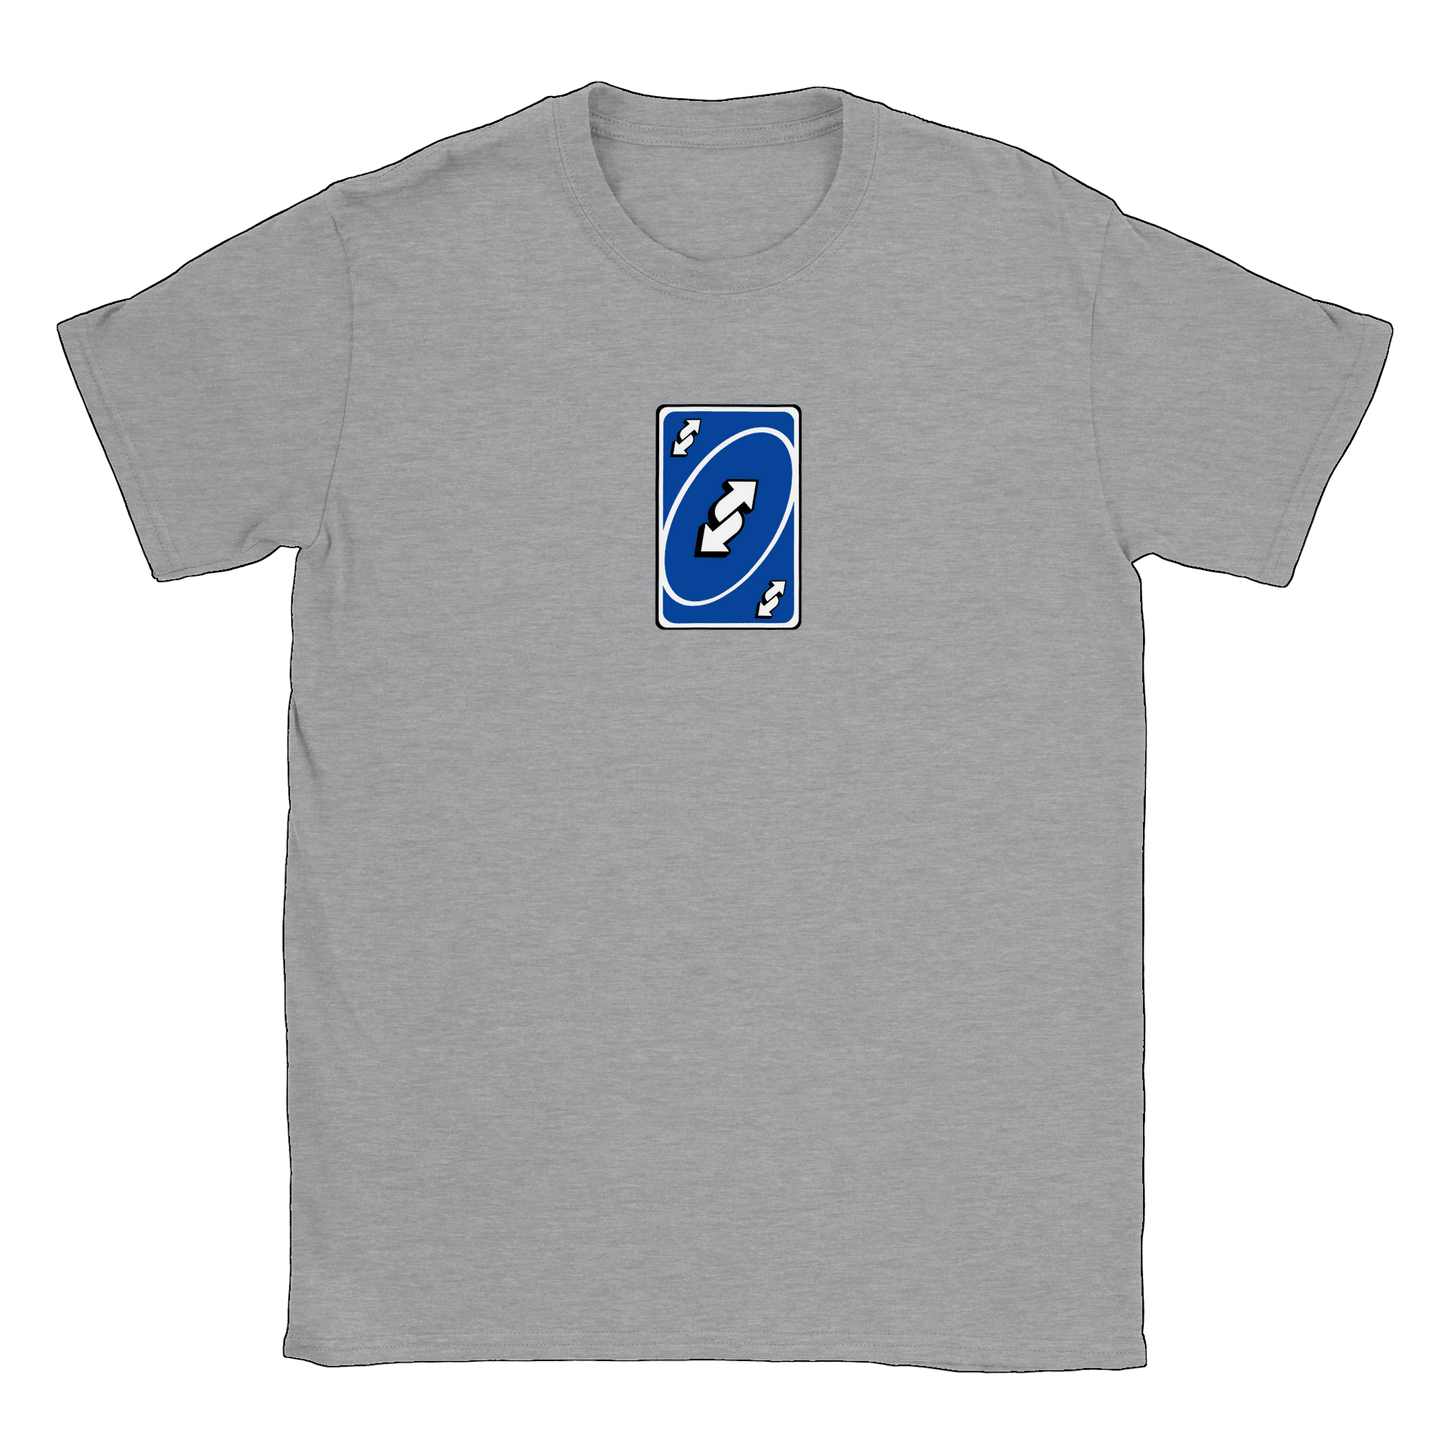 Vändkort - T-shirt Sports Grey